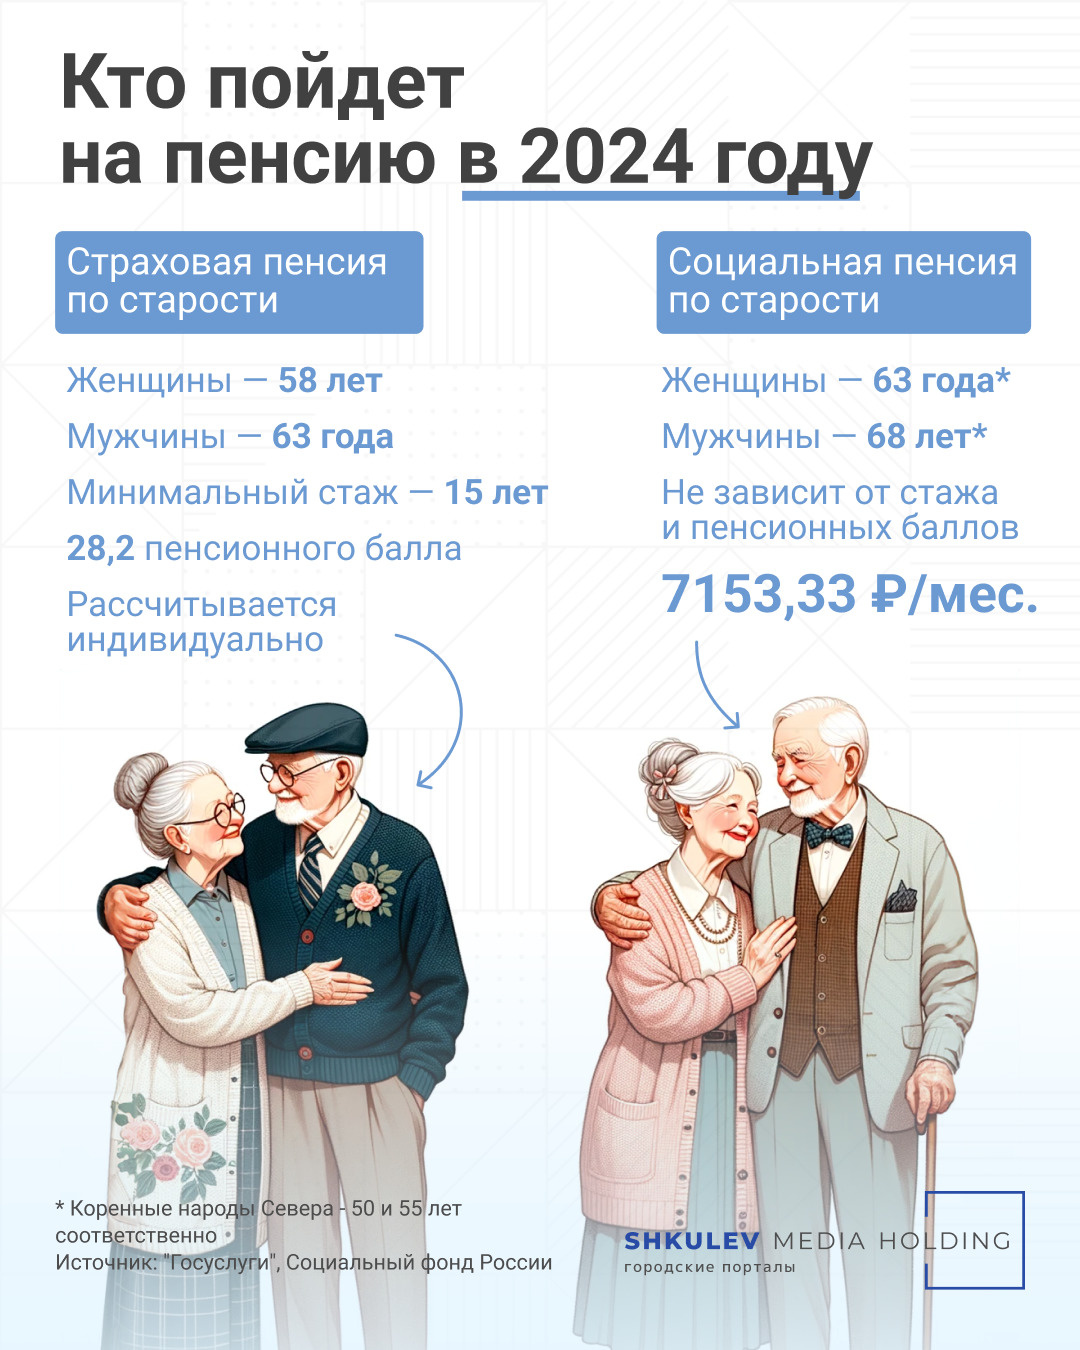 Социальную пенсию по старости назначают на пять лет позже, чем страховую